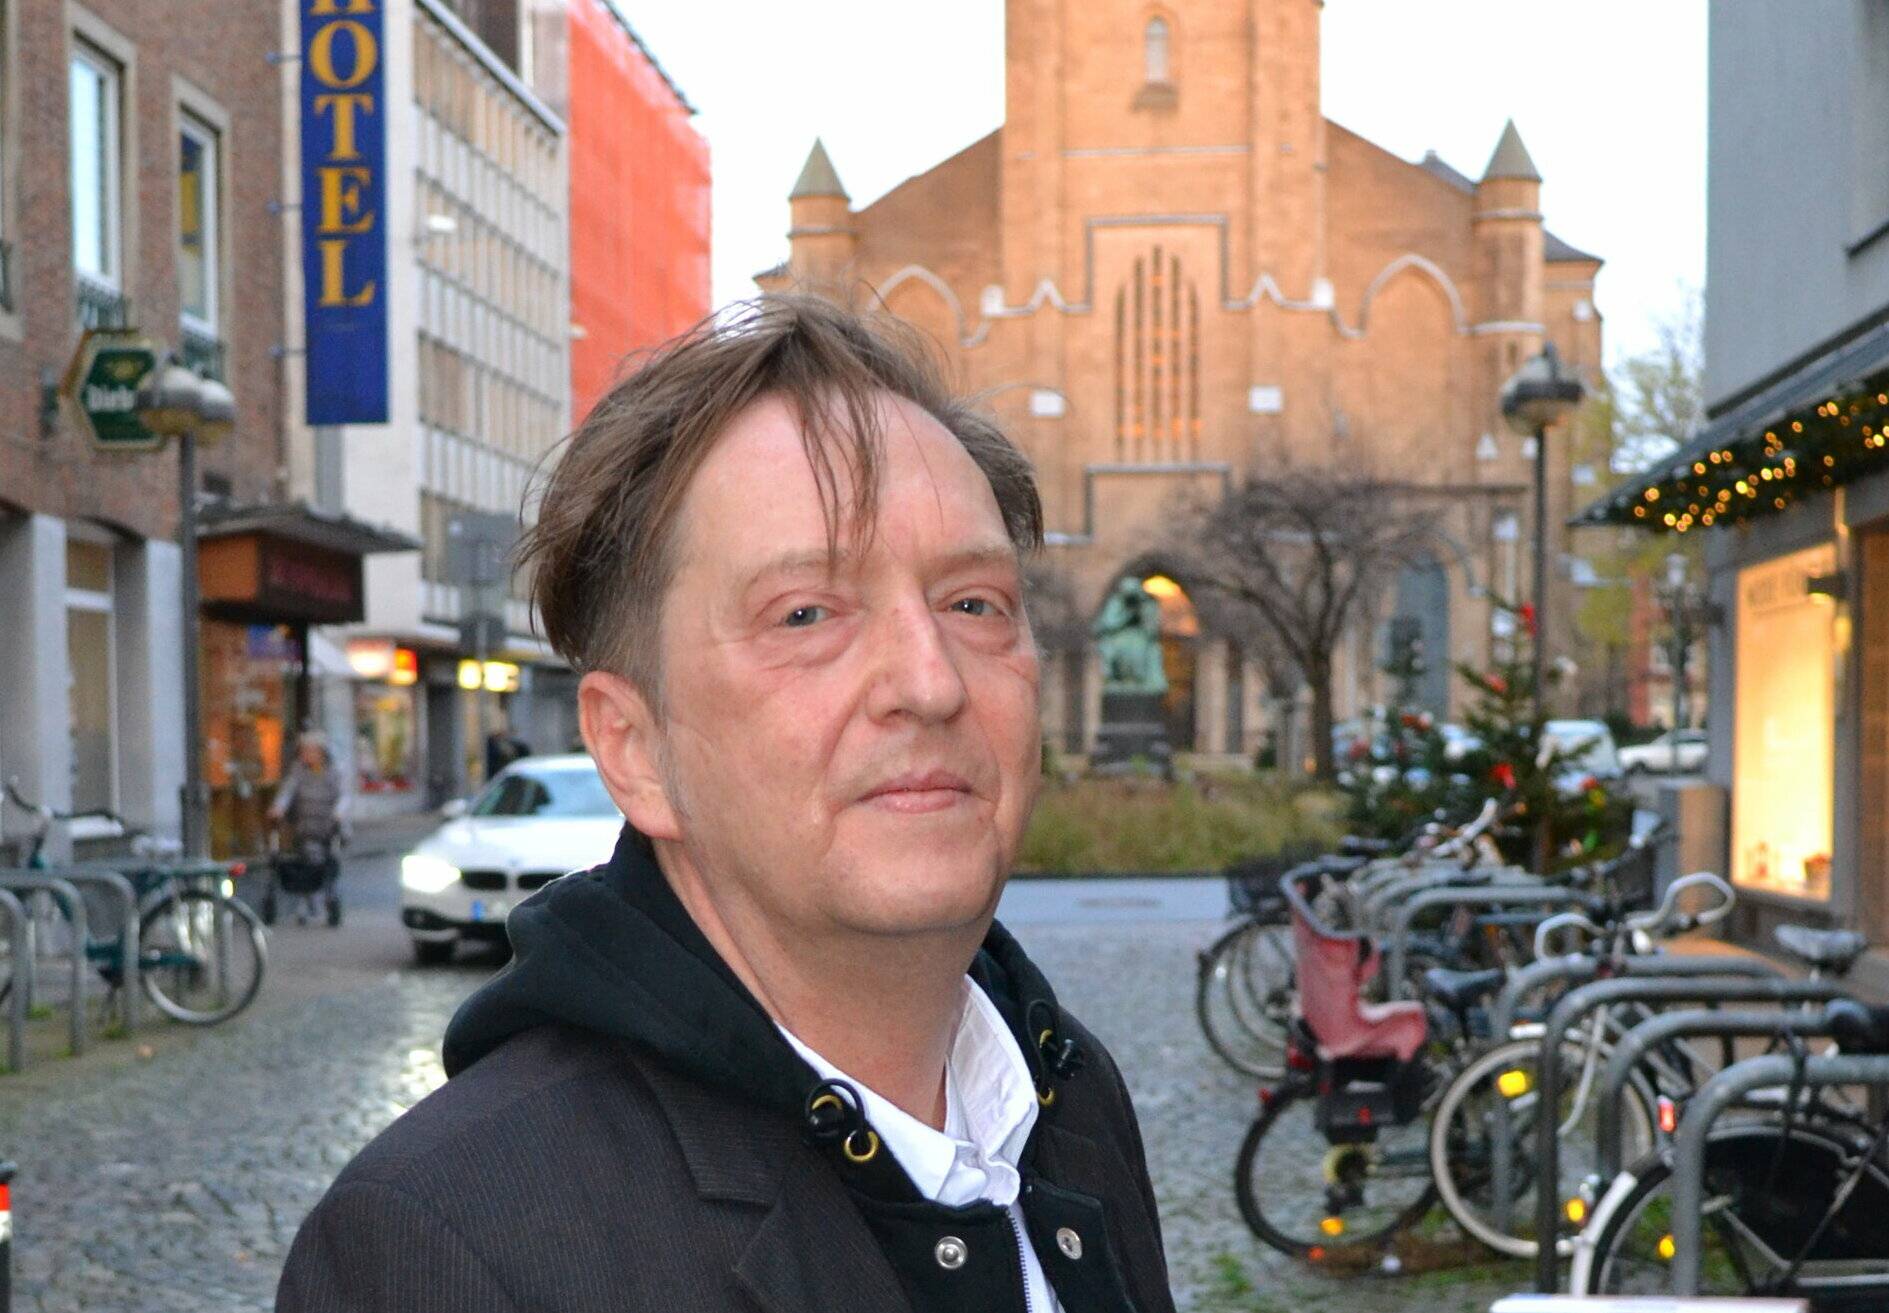  Andreas Alberts ist Sprecher der Anwohnerinitiative Marienviertel.  